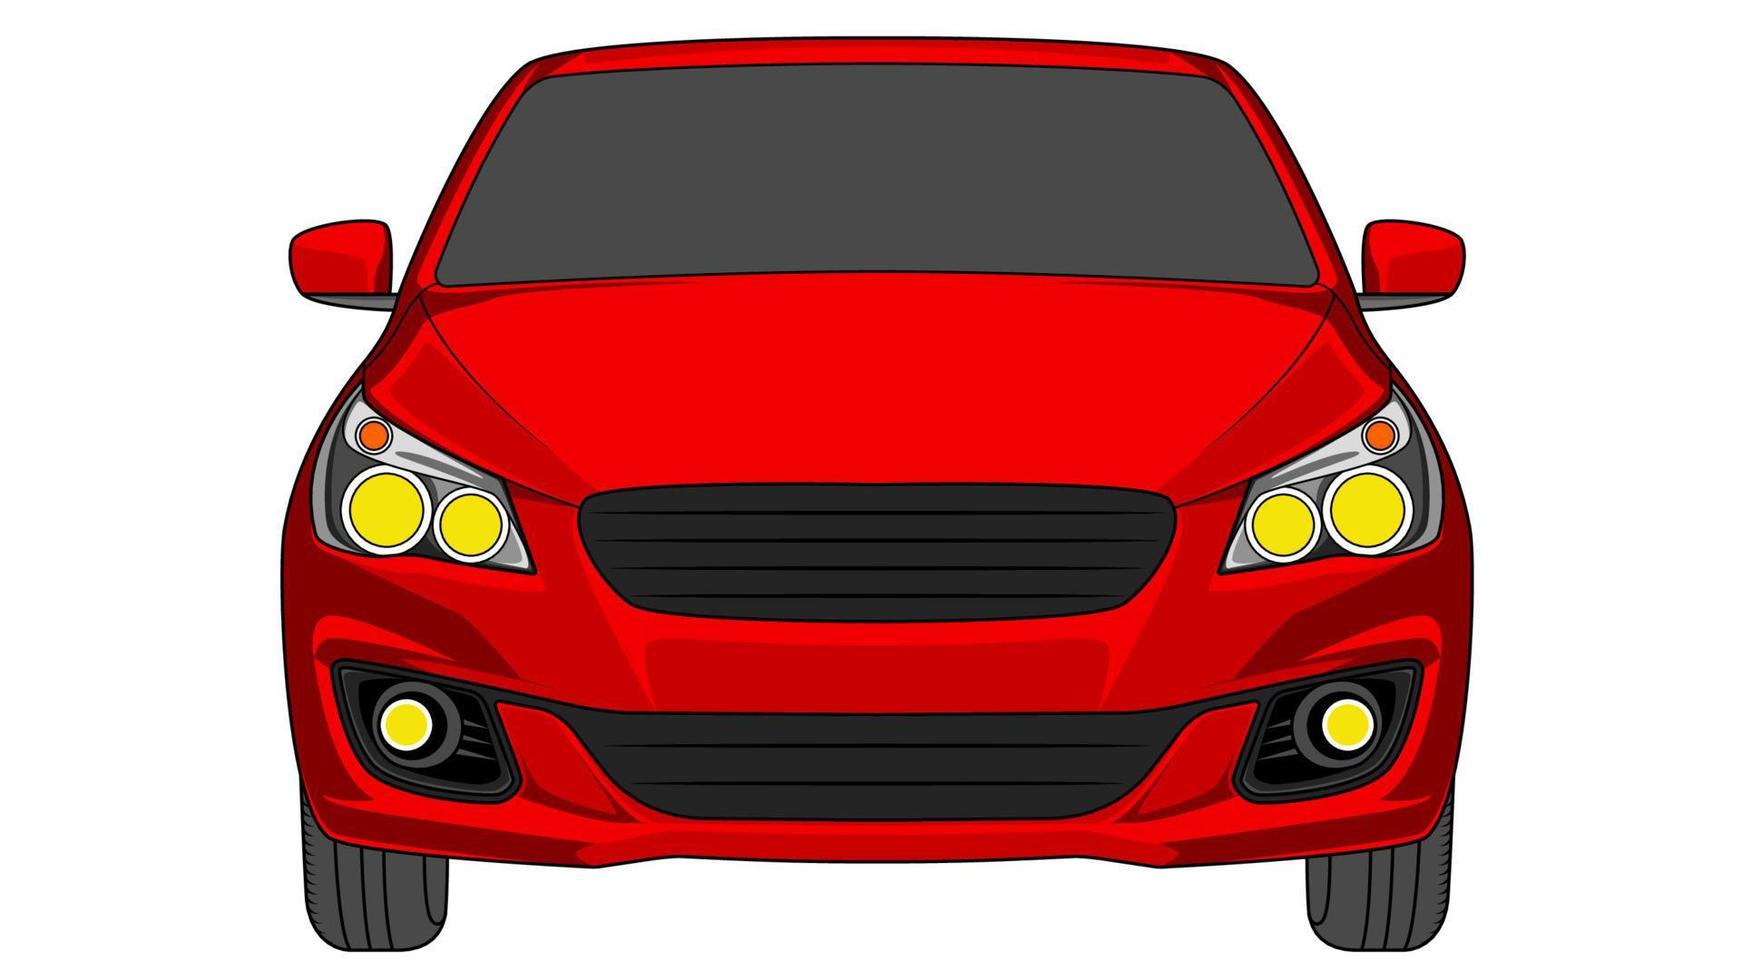 premium sedan car vector, sedan car vector illustration in flat style.